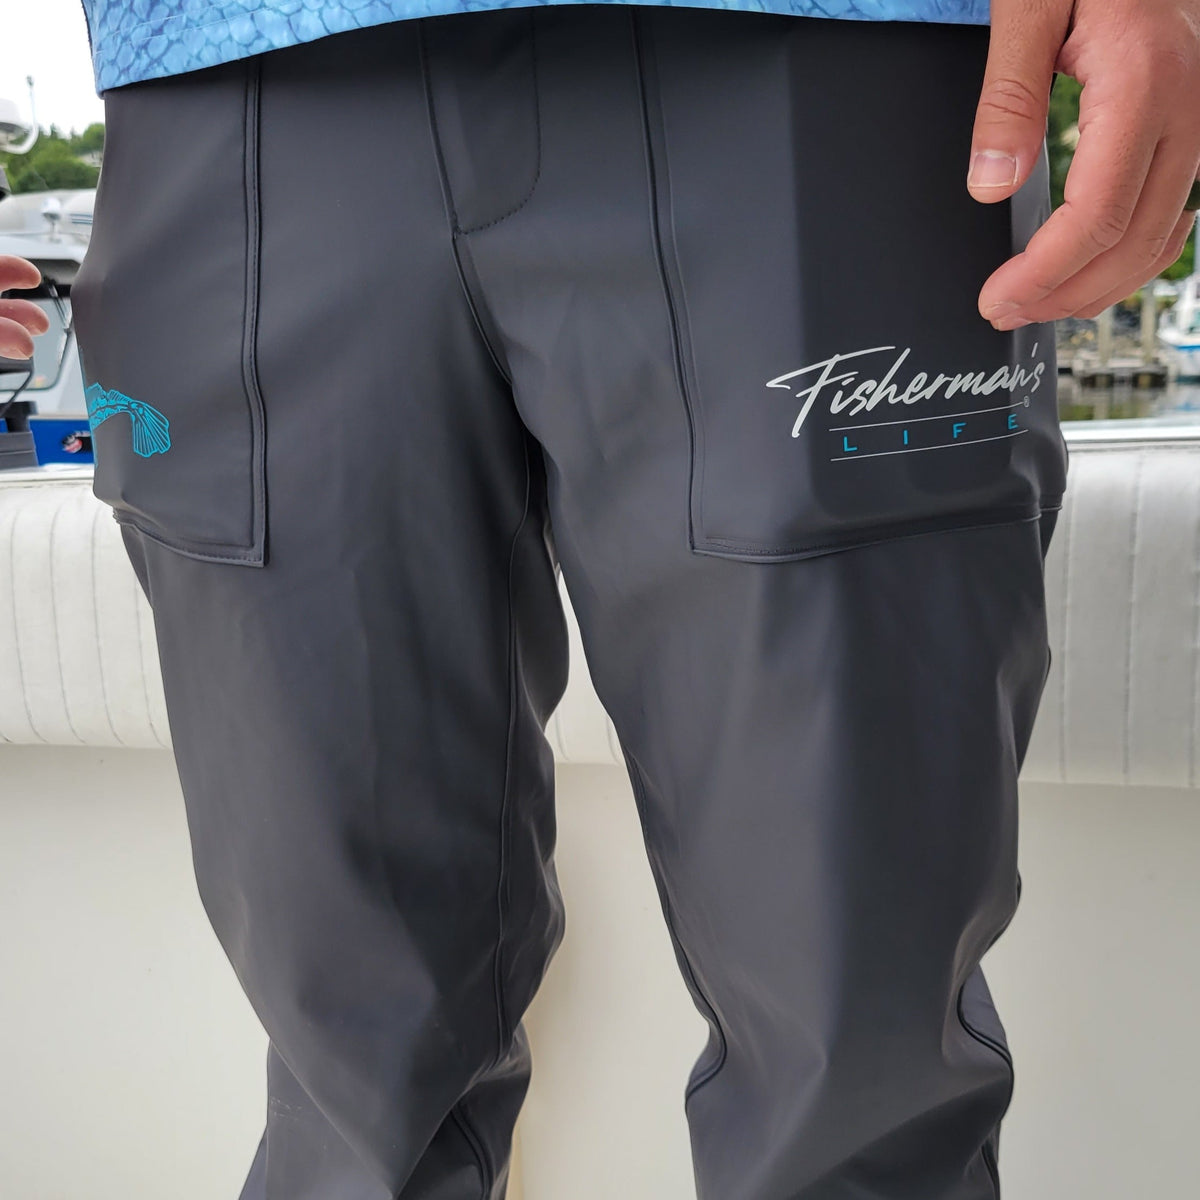 waterproof fishing pants